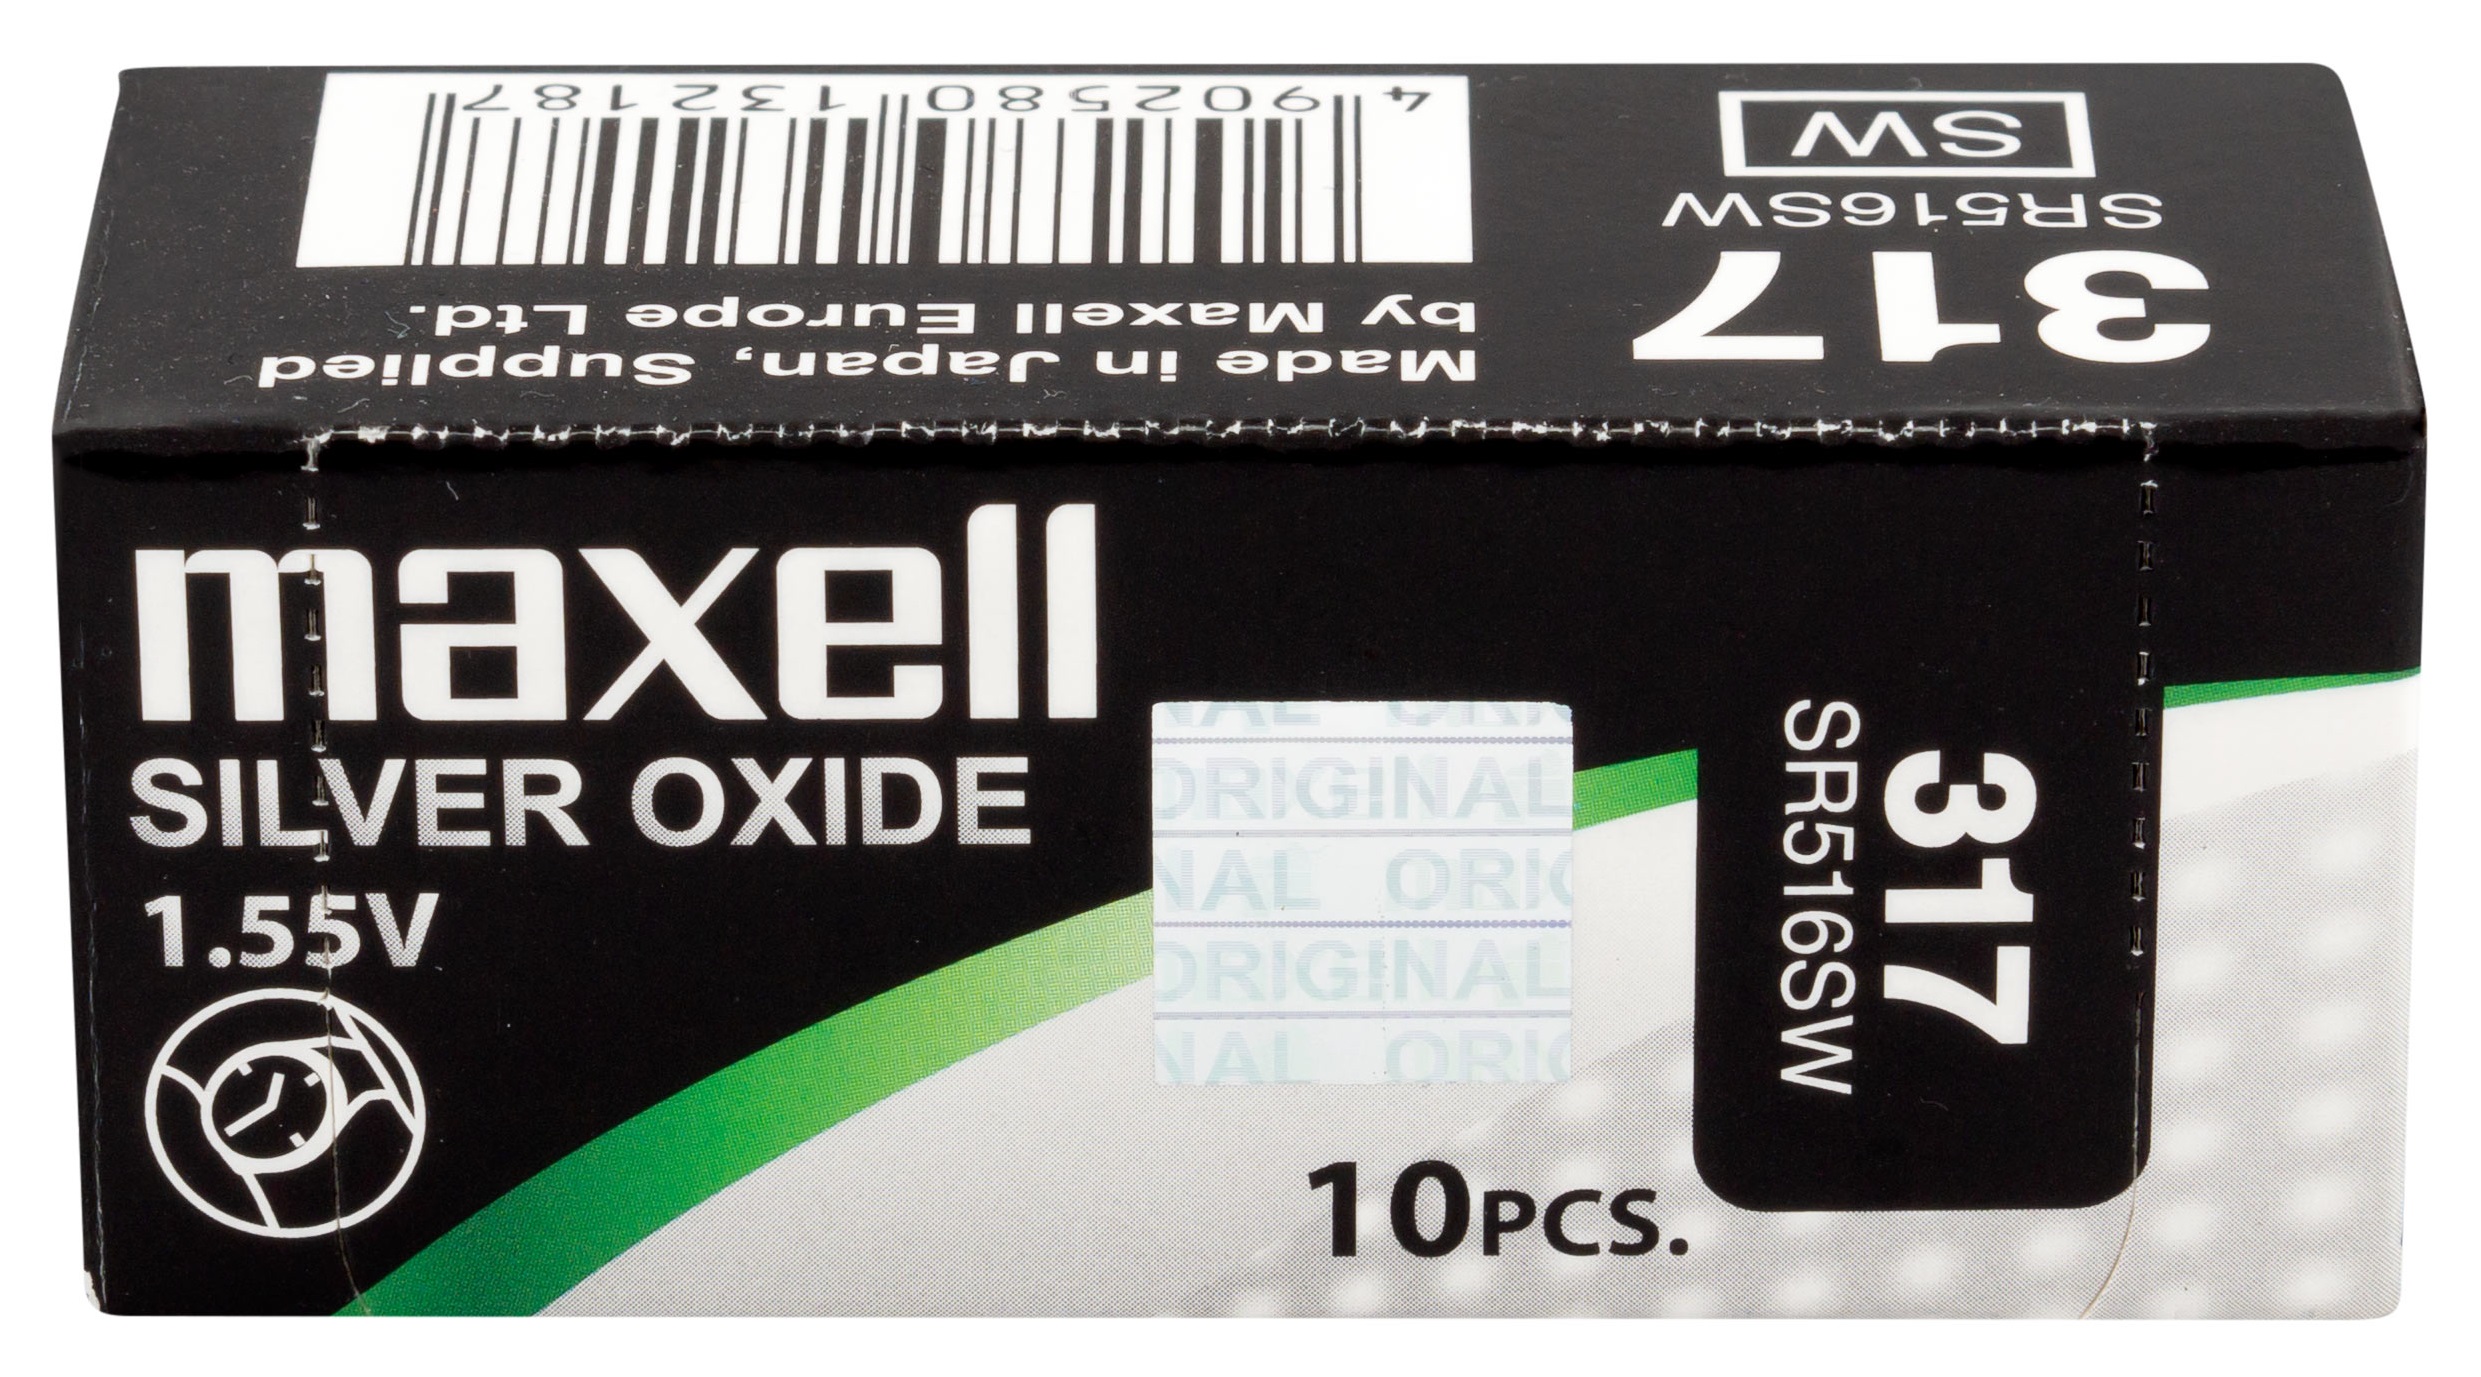 Батарейка Maxell SR516SW 1PC EU MF